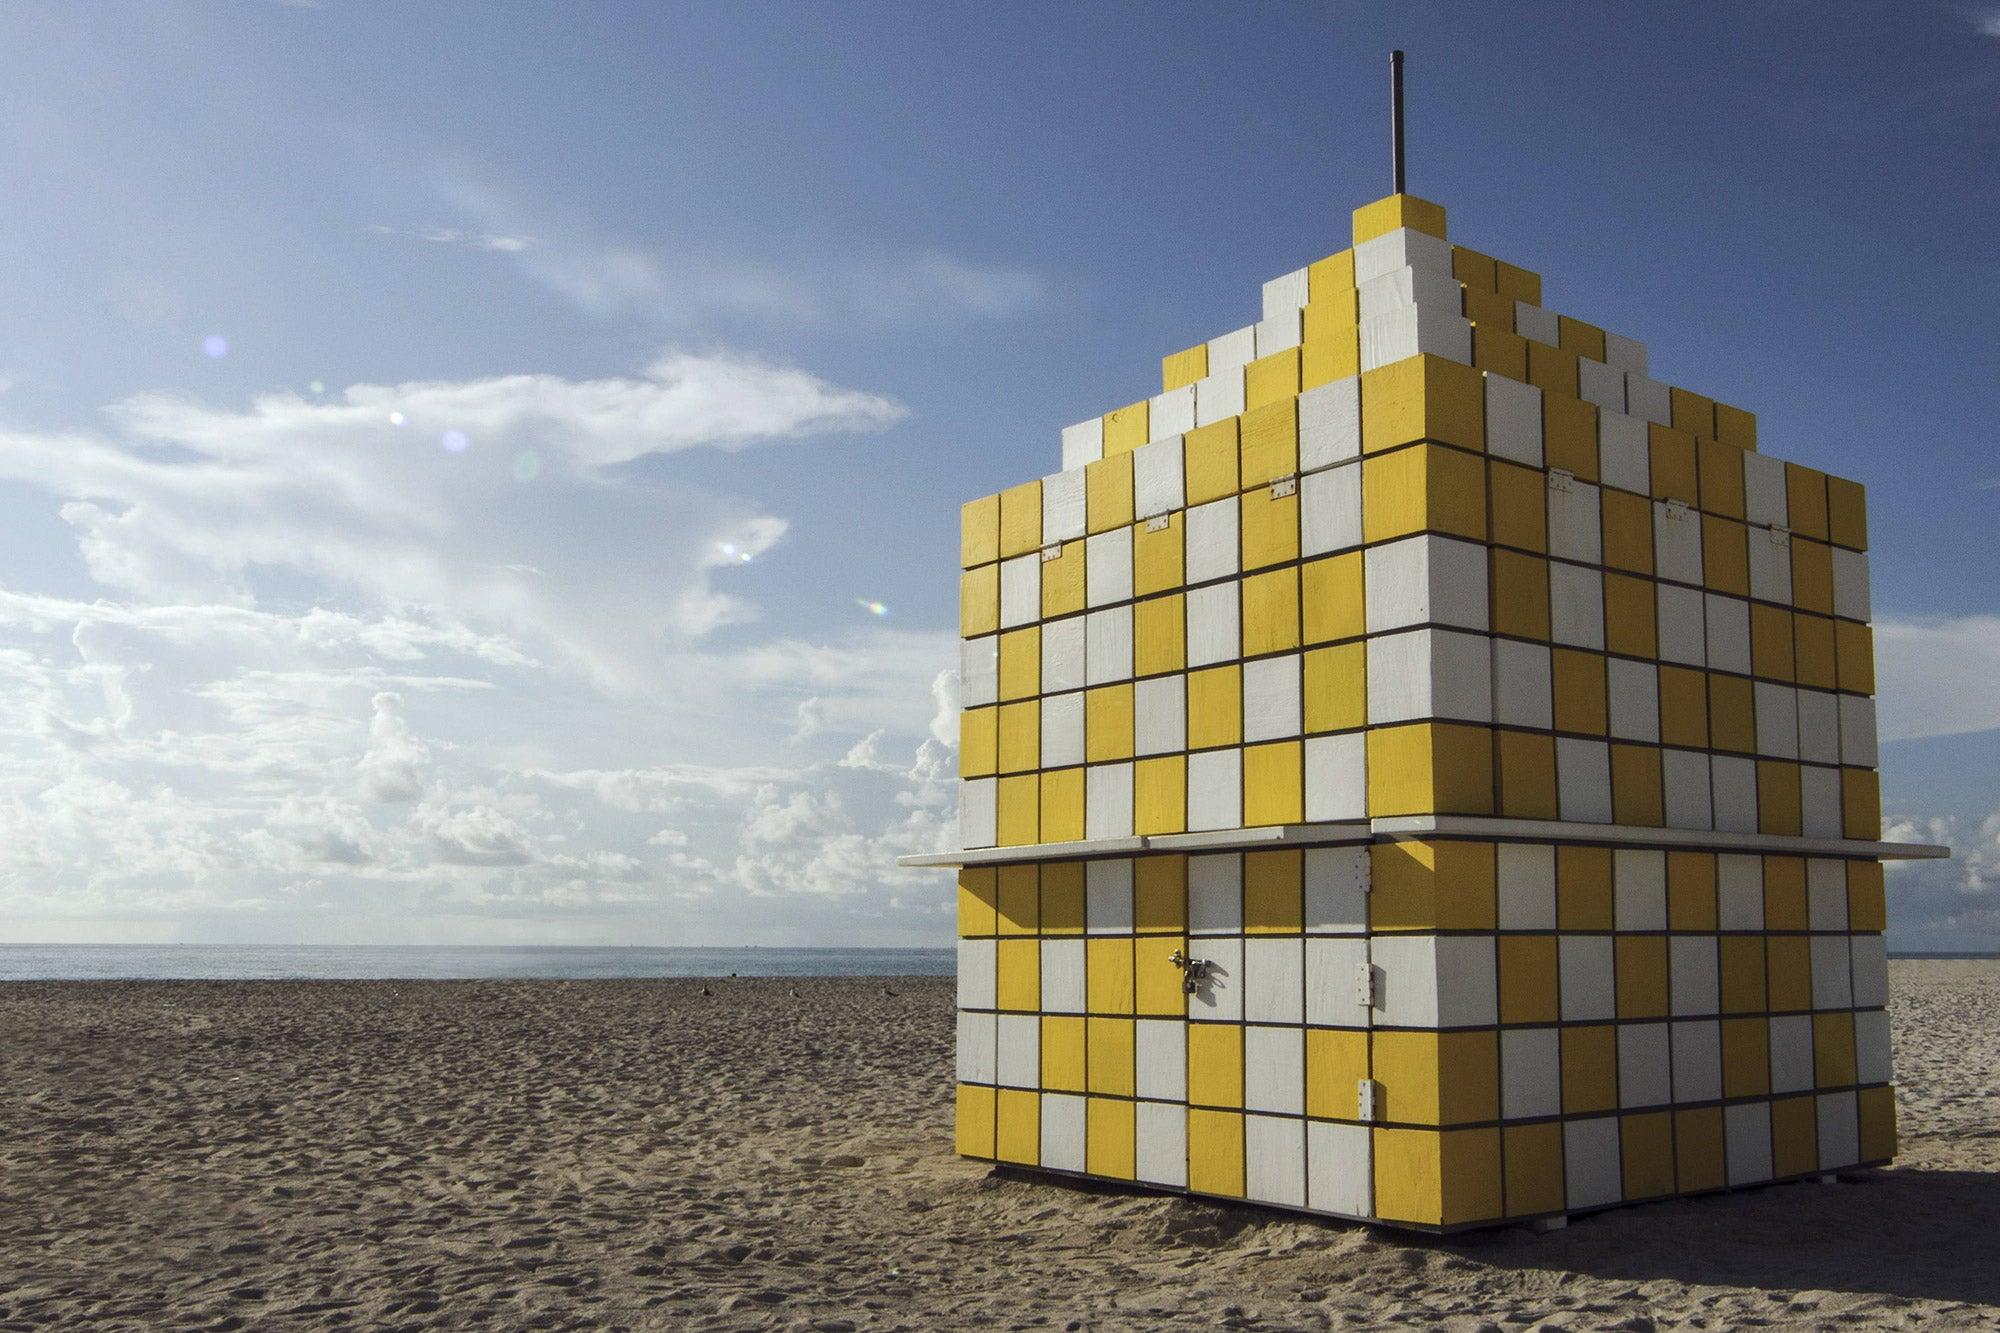 So nah und doch so weit entfernt und Rubik's Cube. Limitierte Auflage Farbfotografie (Grau), Color Photograph, von Juan Pablo Castro